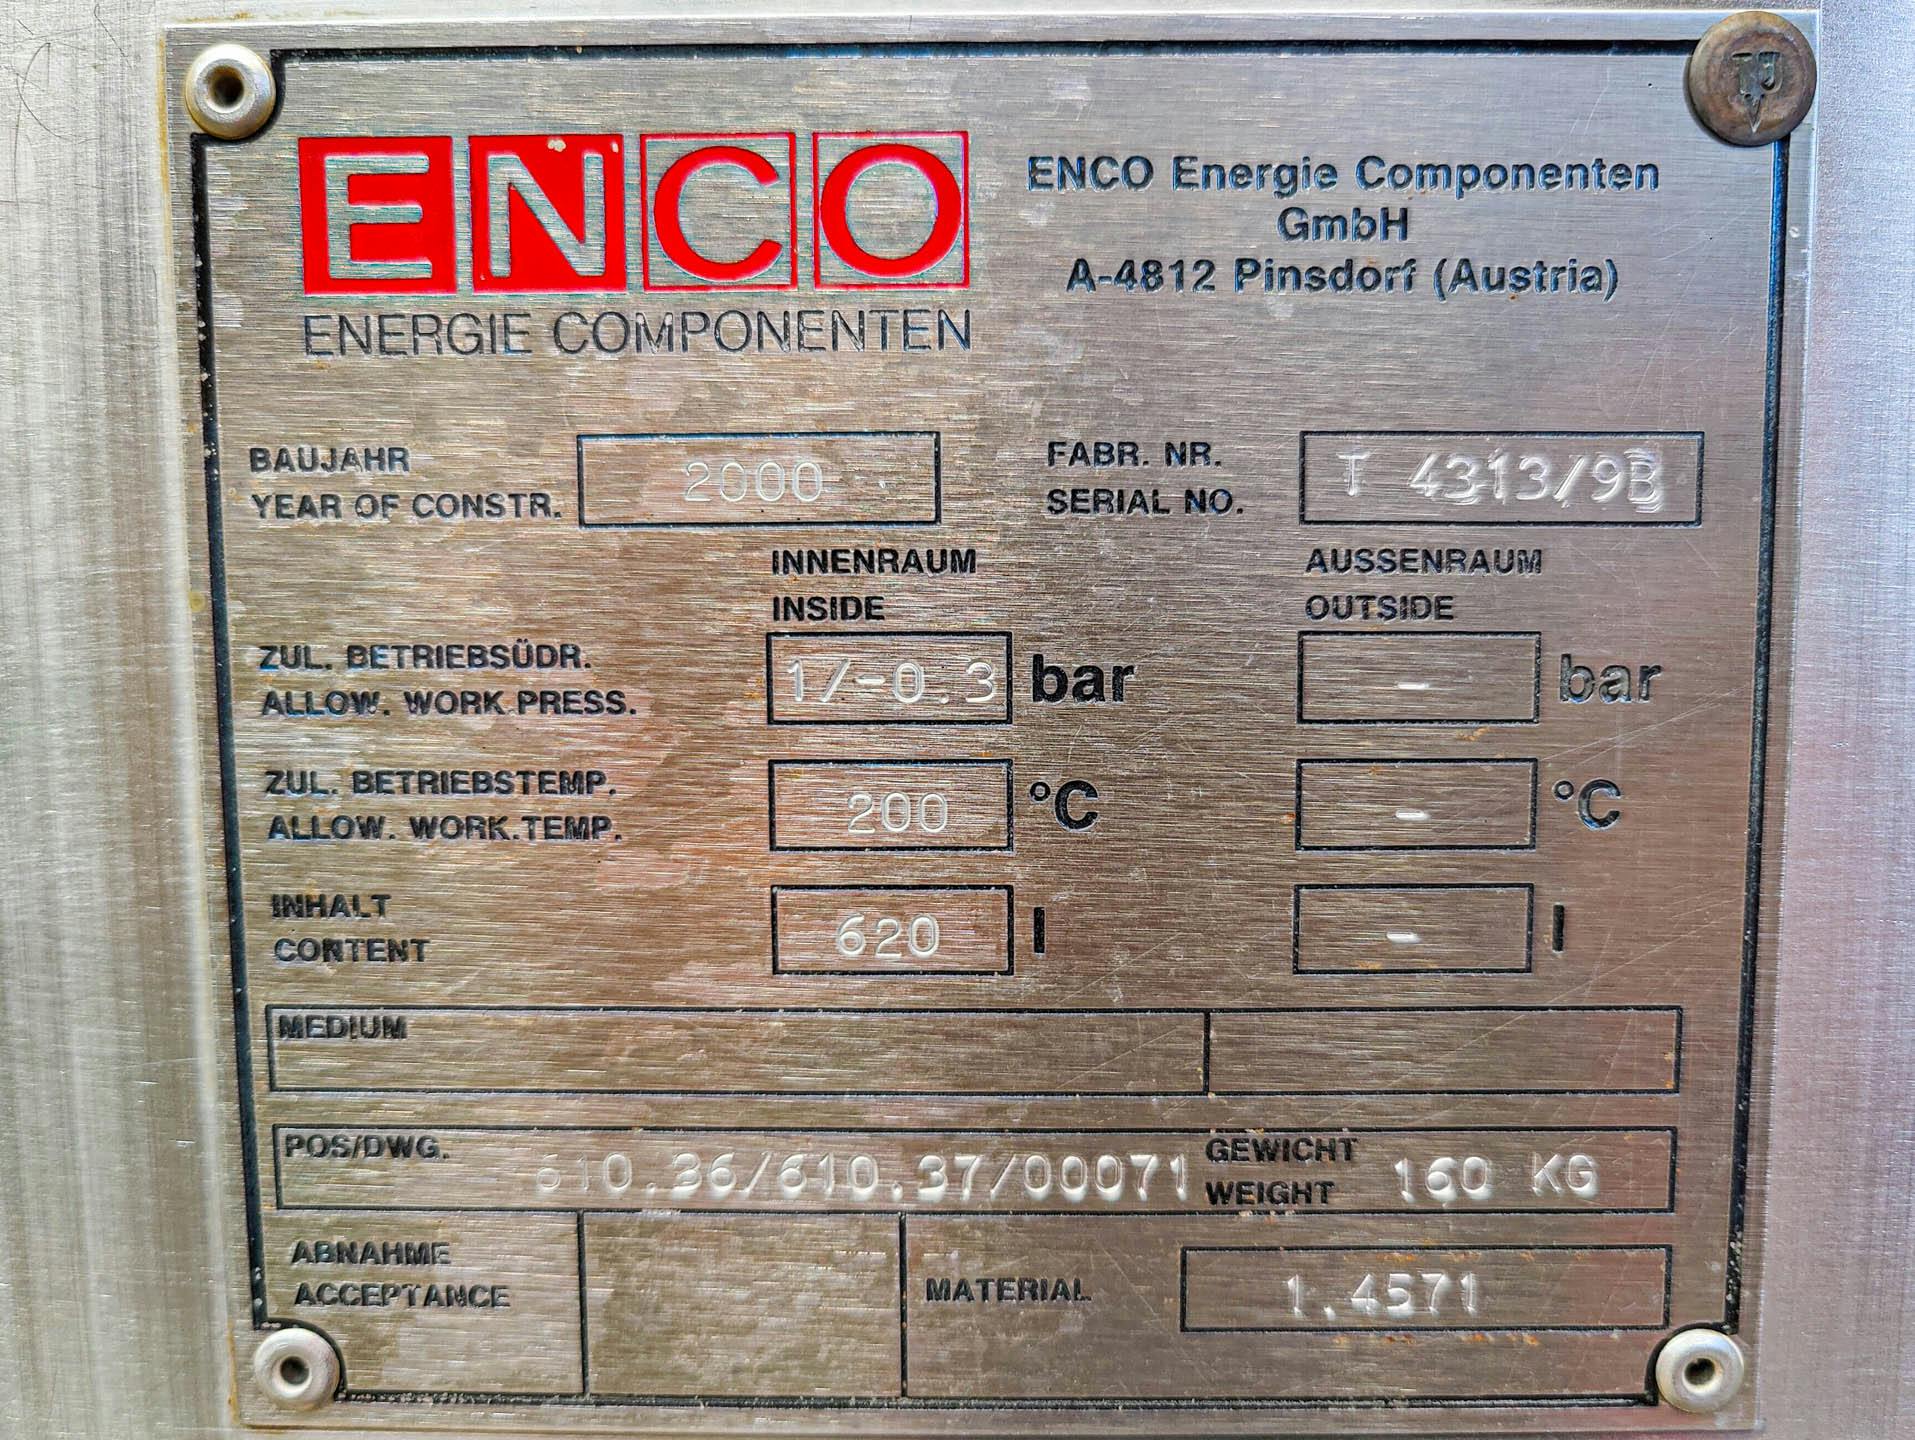 Enco 620 Ltr. - Pressure vessel - image 7